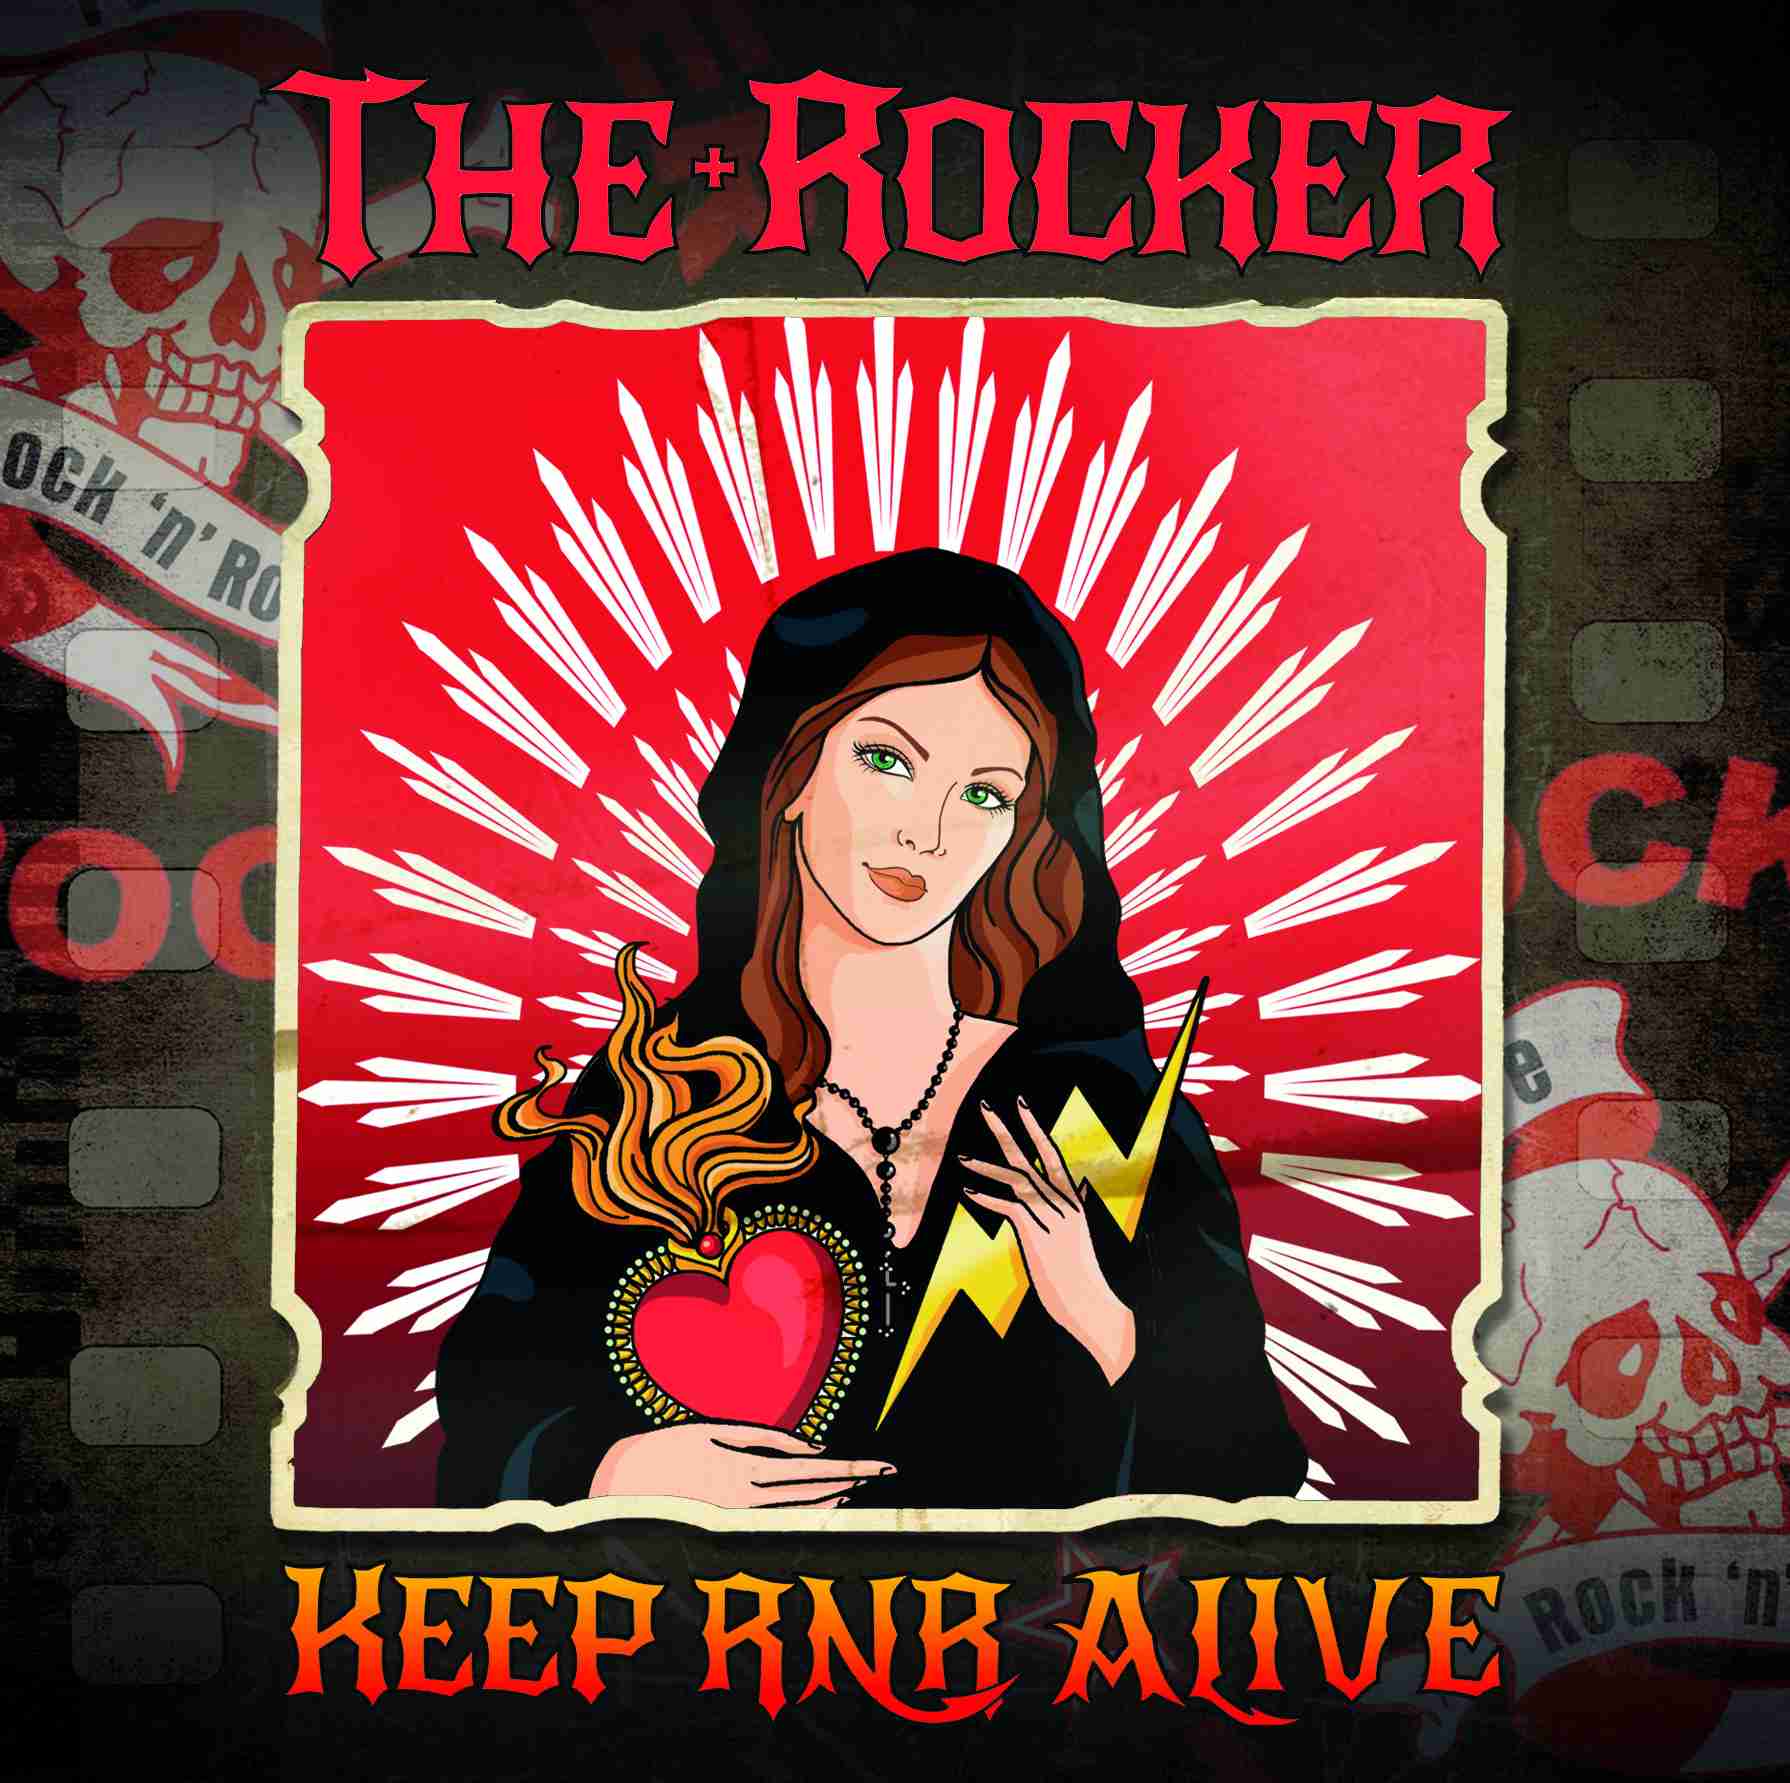 Foto 1 - THE ROCKER “Keep rock‘n roll alive” è il terzo album di inediti della formazione guidata da Edo Arlenghi